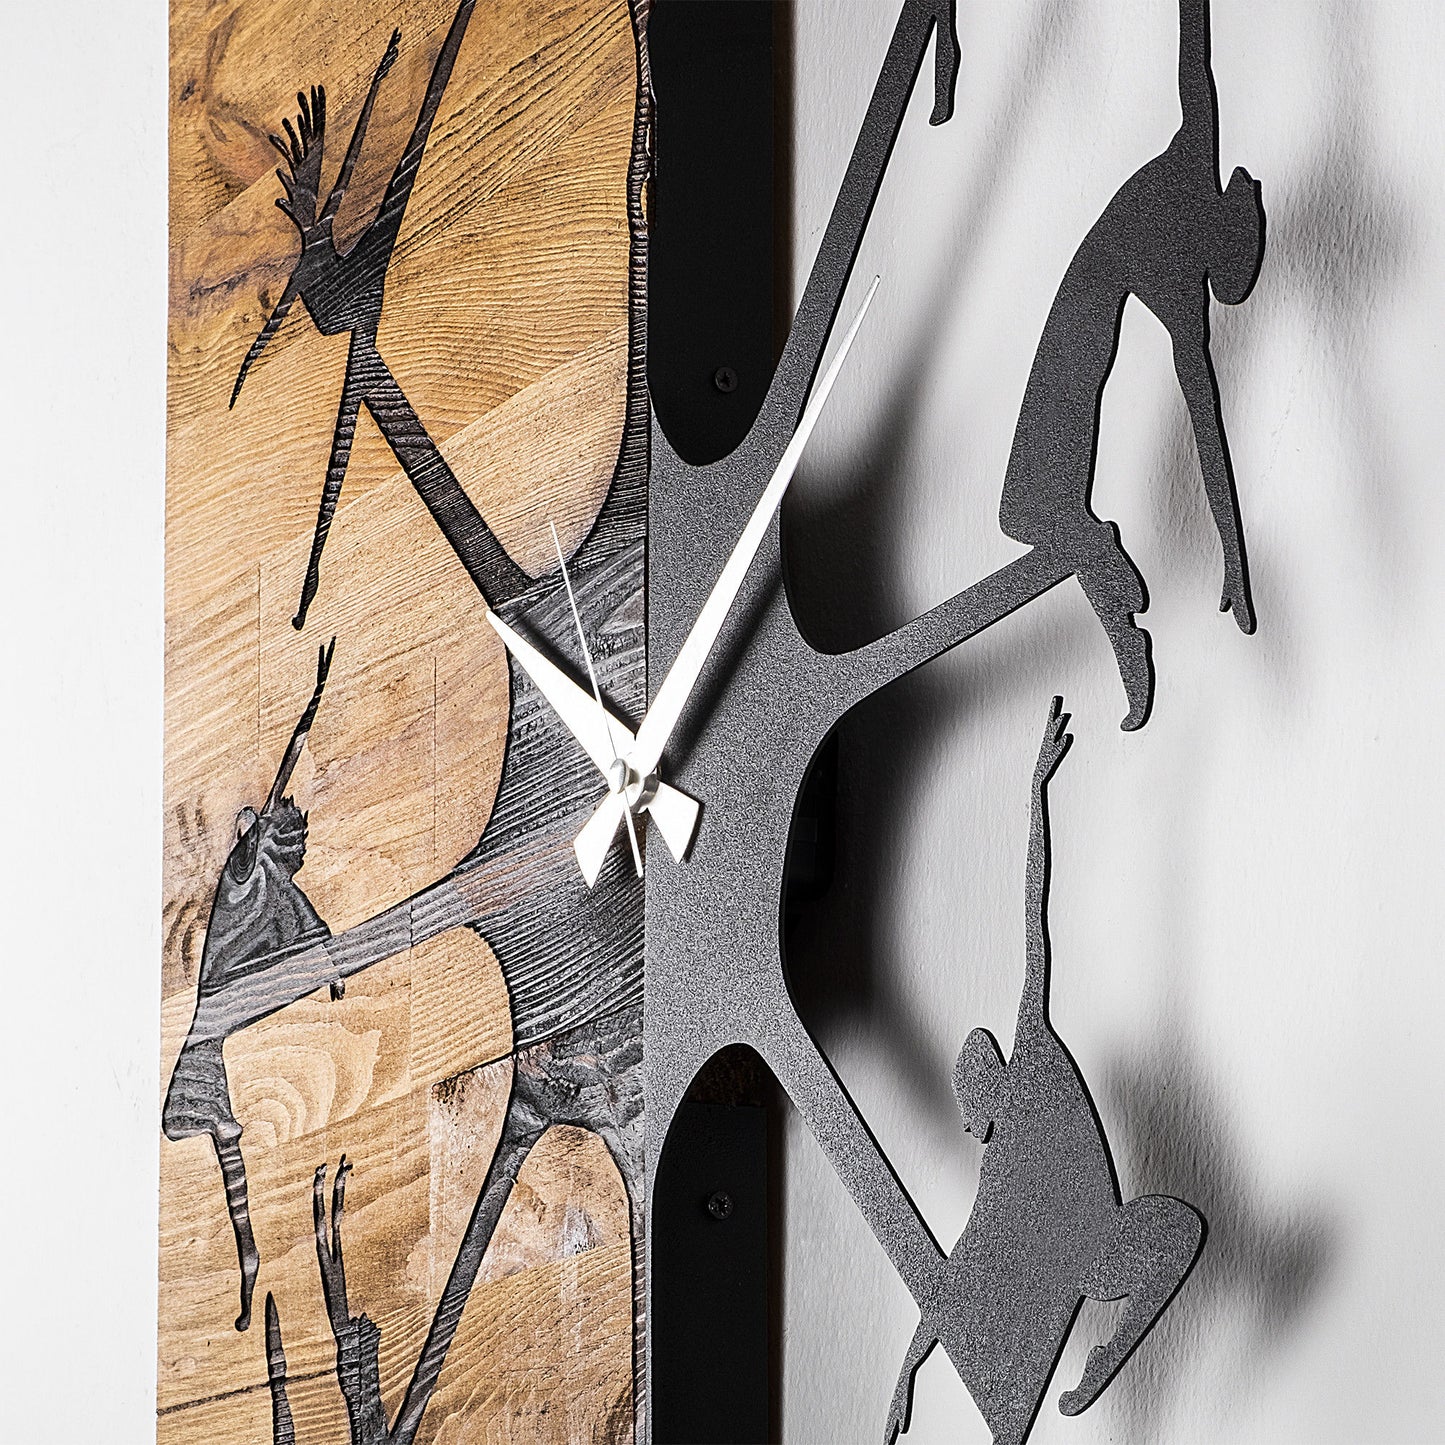 Wooden Clock 22 - Decorative Wooden Wall Clock